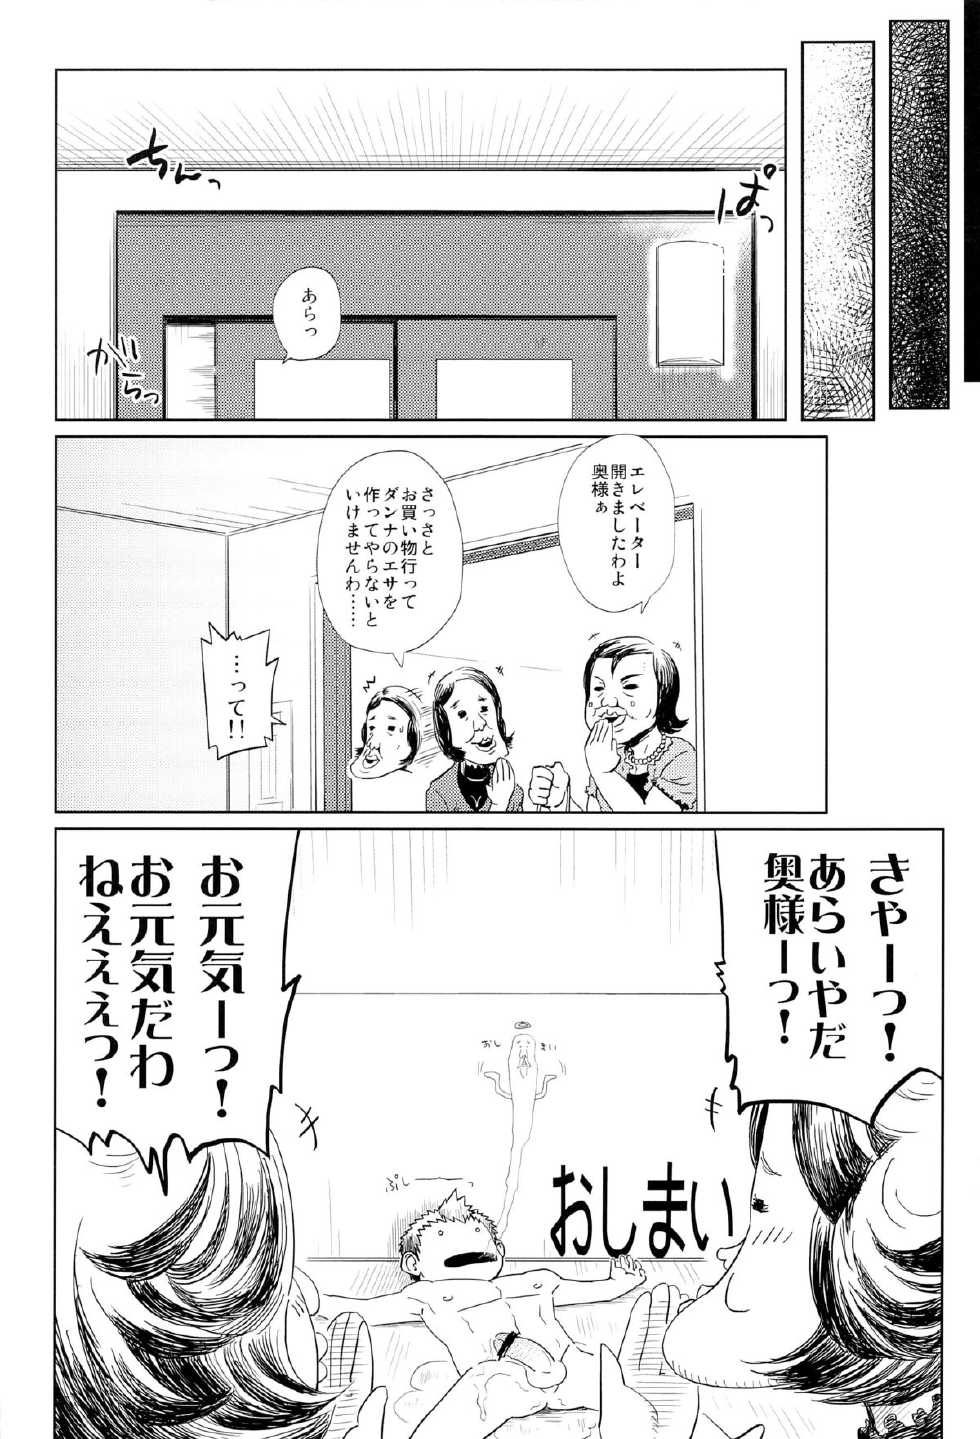 (Shotaful!) [Dokudenpa Jushintei (Kobucha)] Elevator Escalation - Page 28